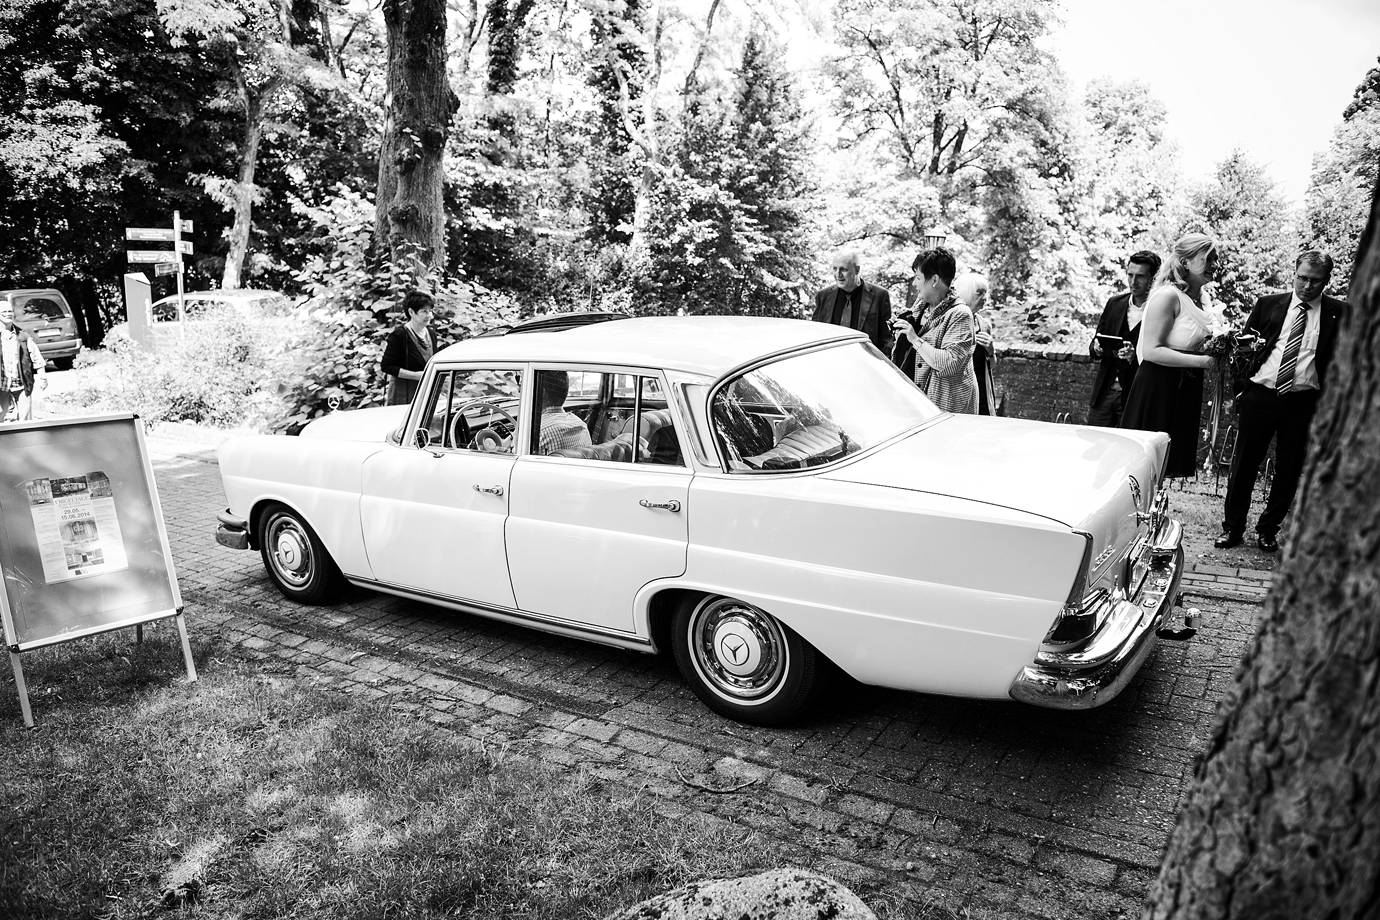 Hochzeitsfotograf Worpswede